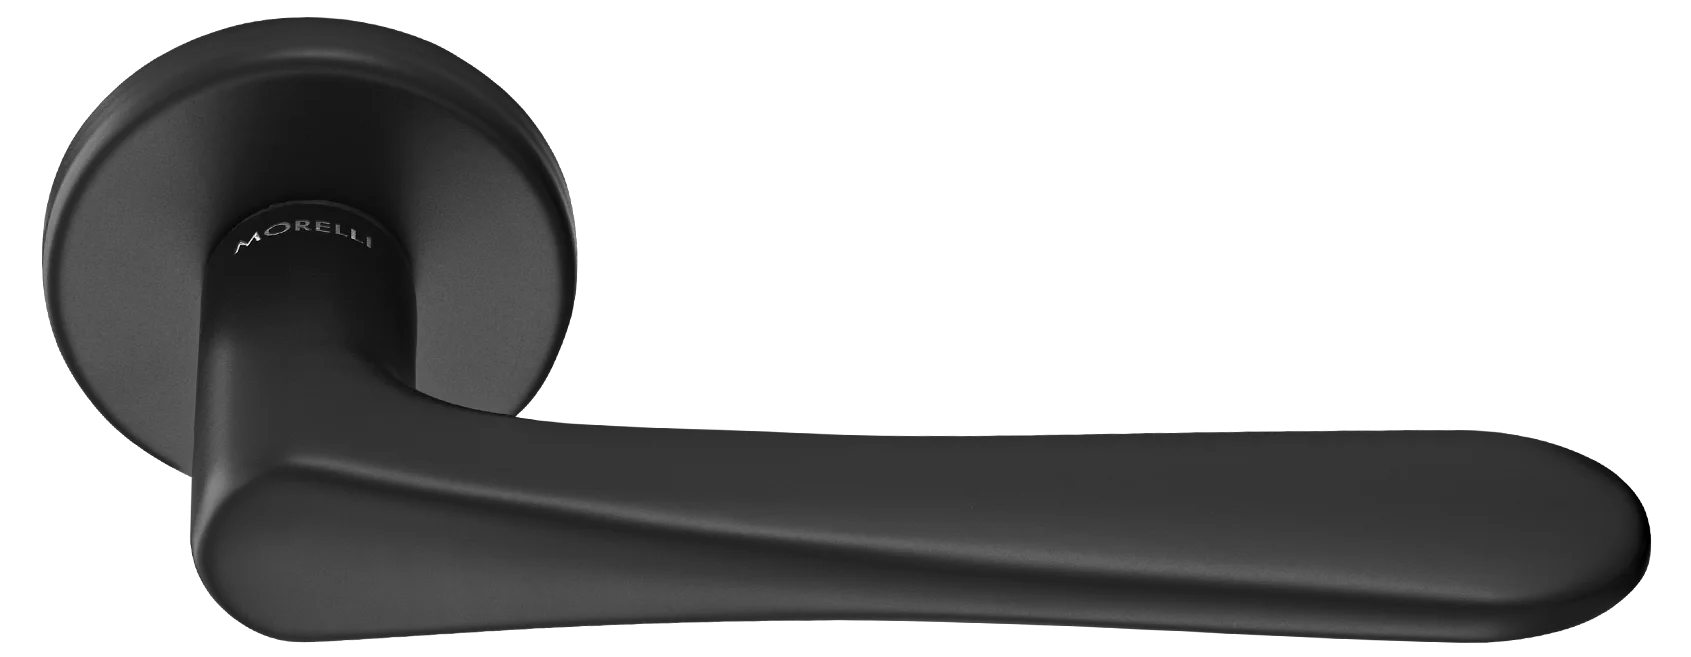 AULA R5 NERO, ручка дверная на розетке 7мм, цвет -  черный фото купить Краснодар